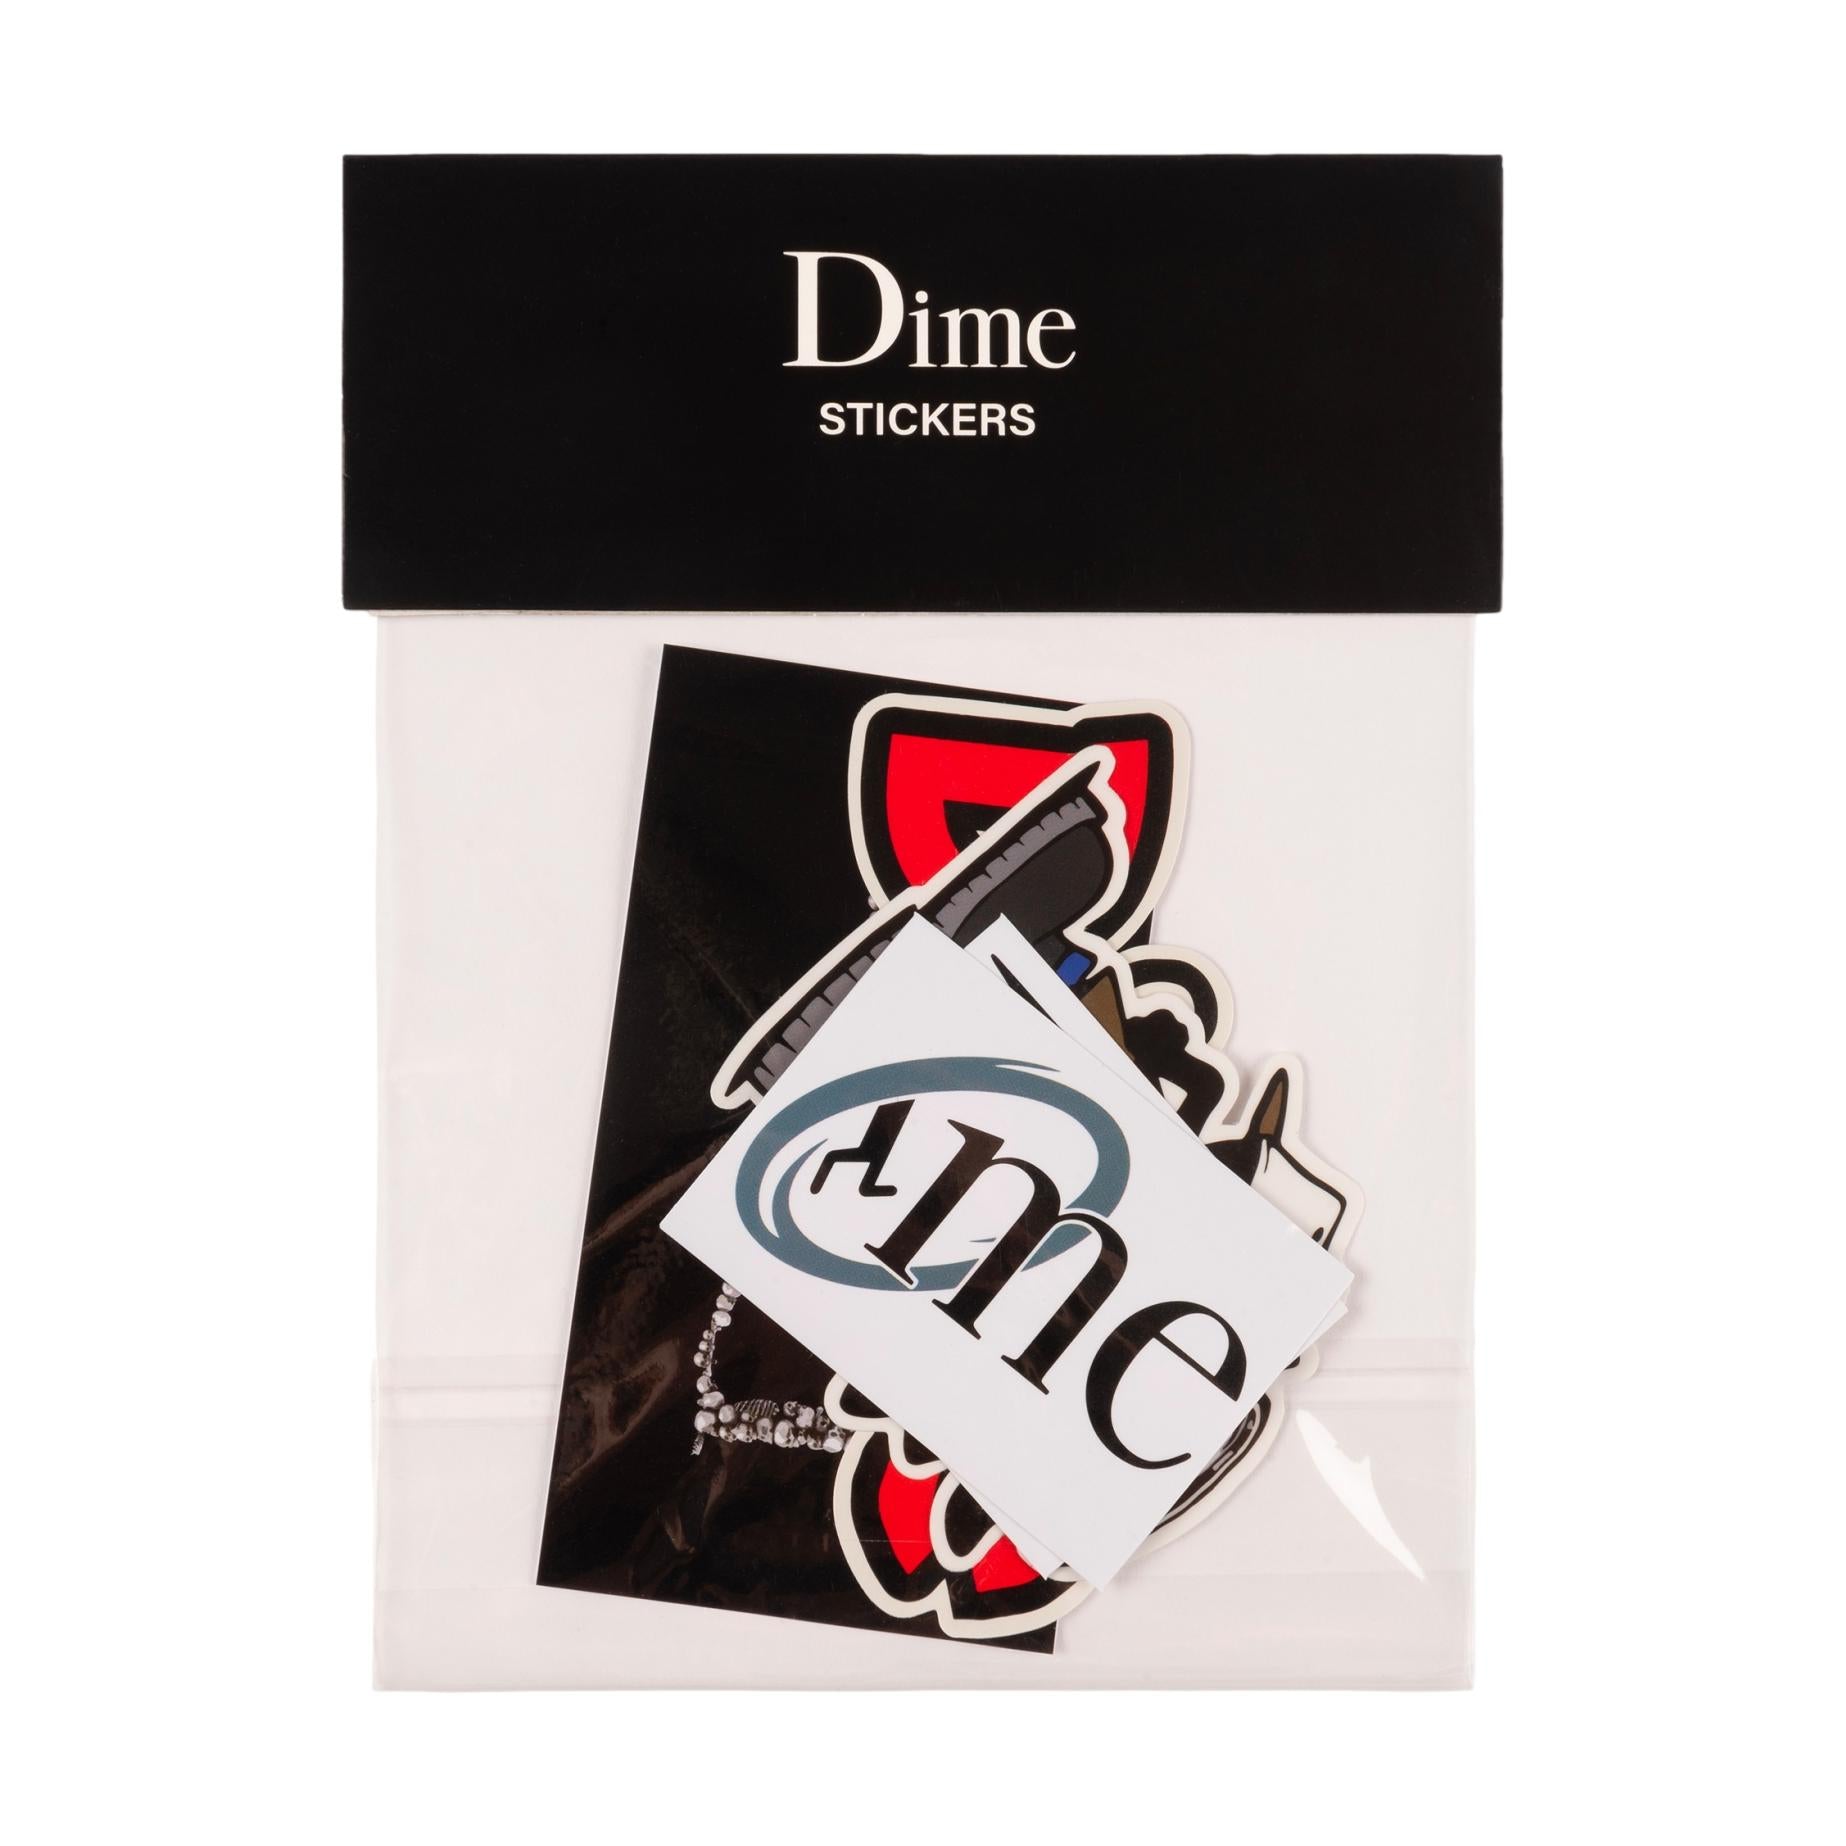 Dime Classic Sticker Pack - Venue Skateboards